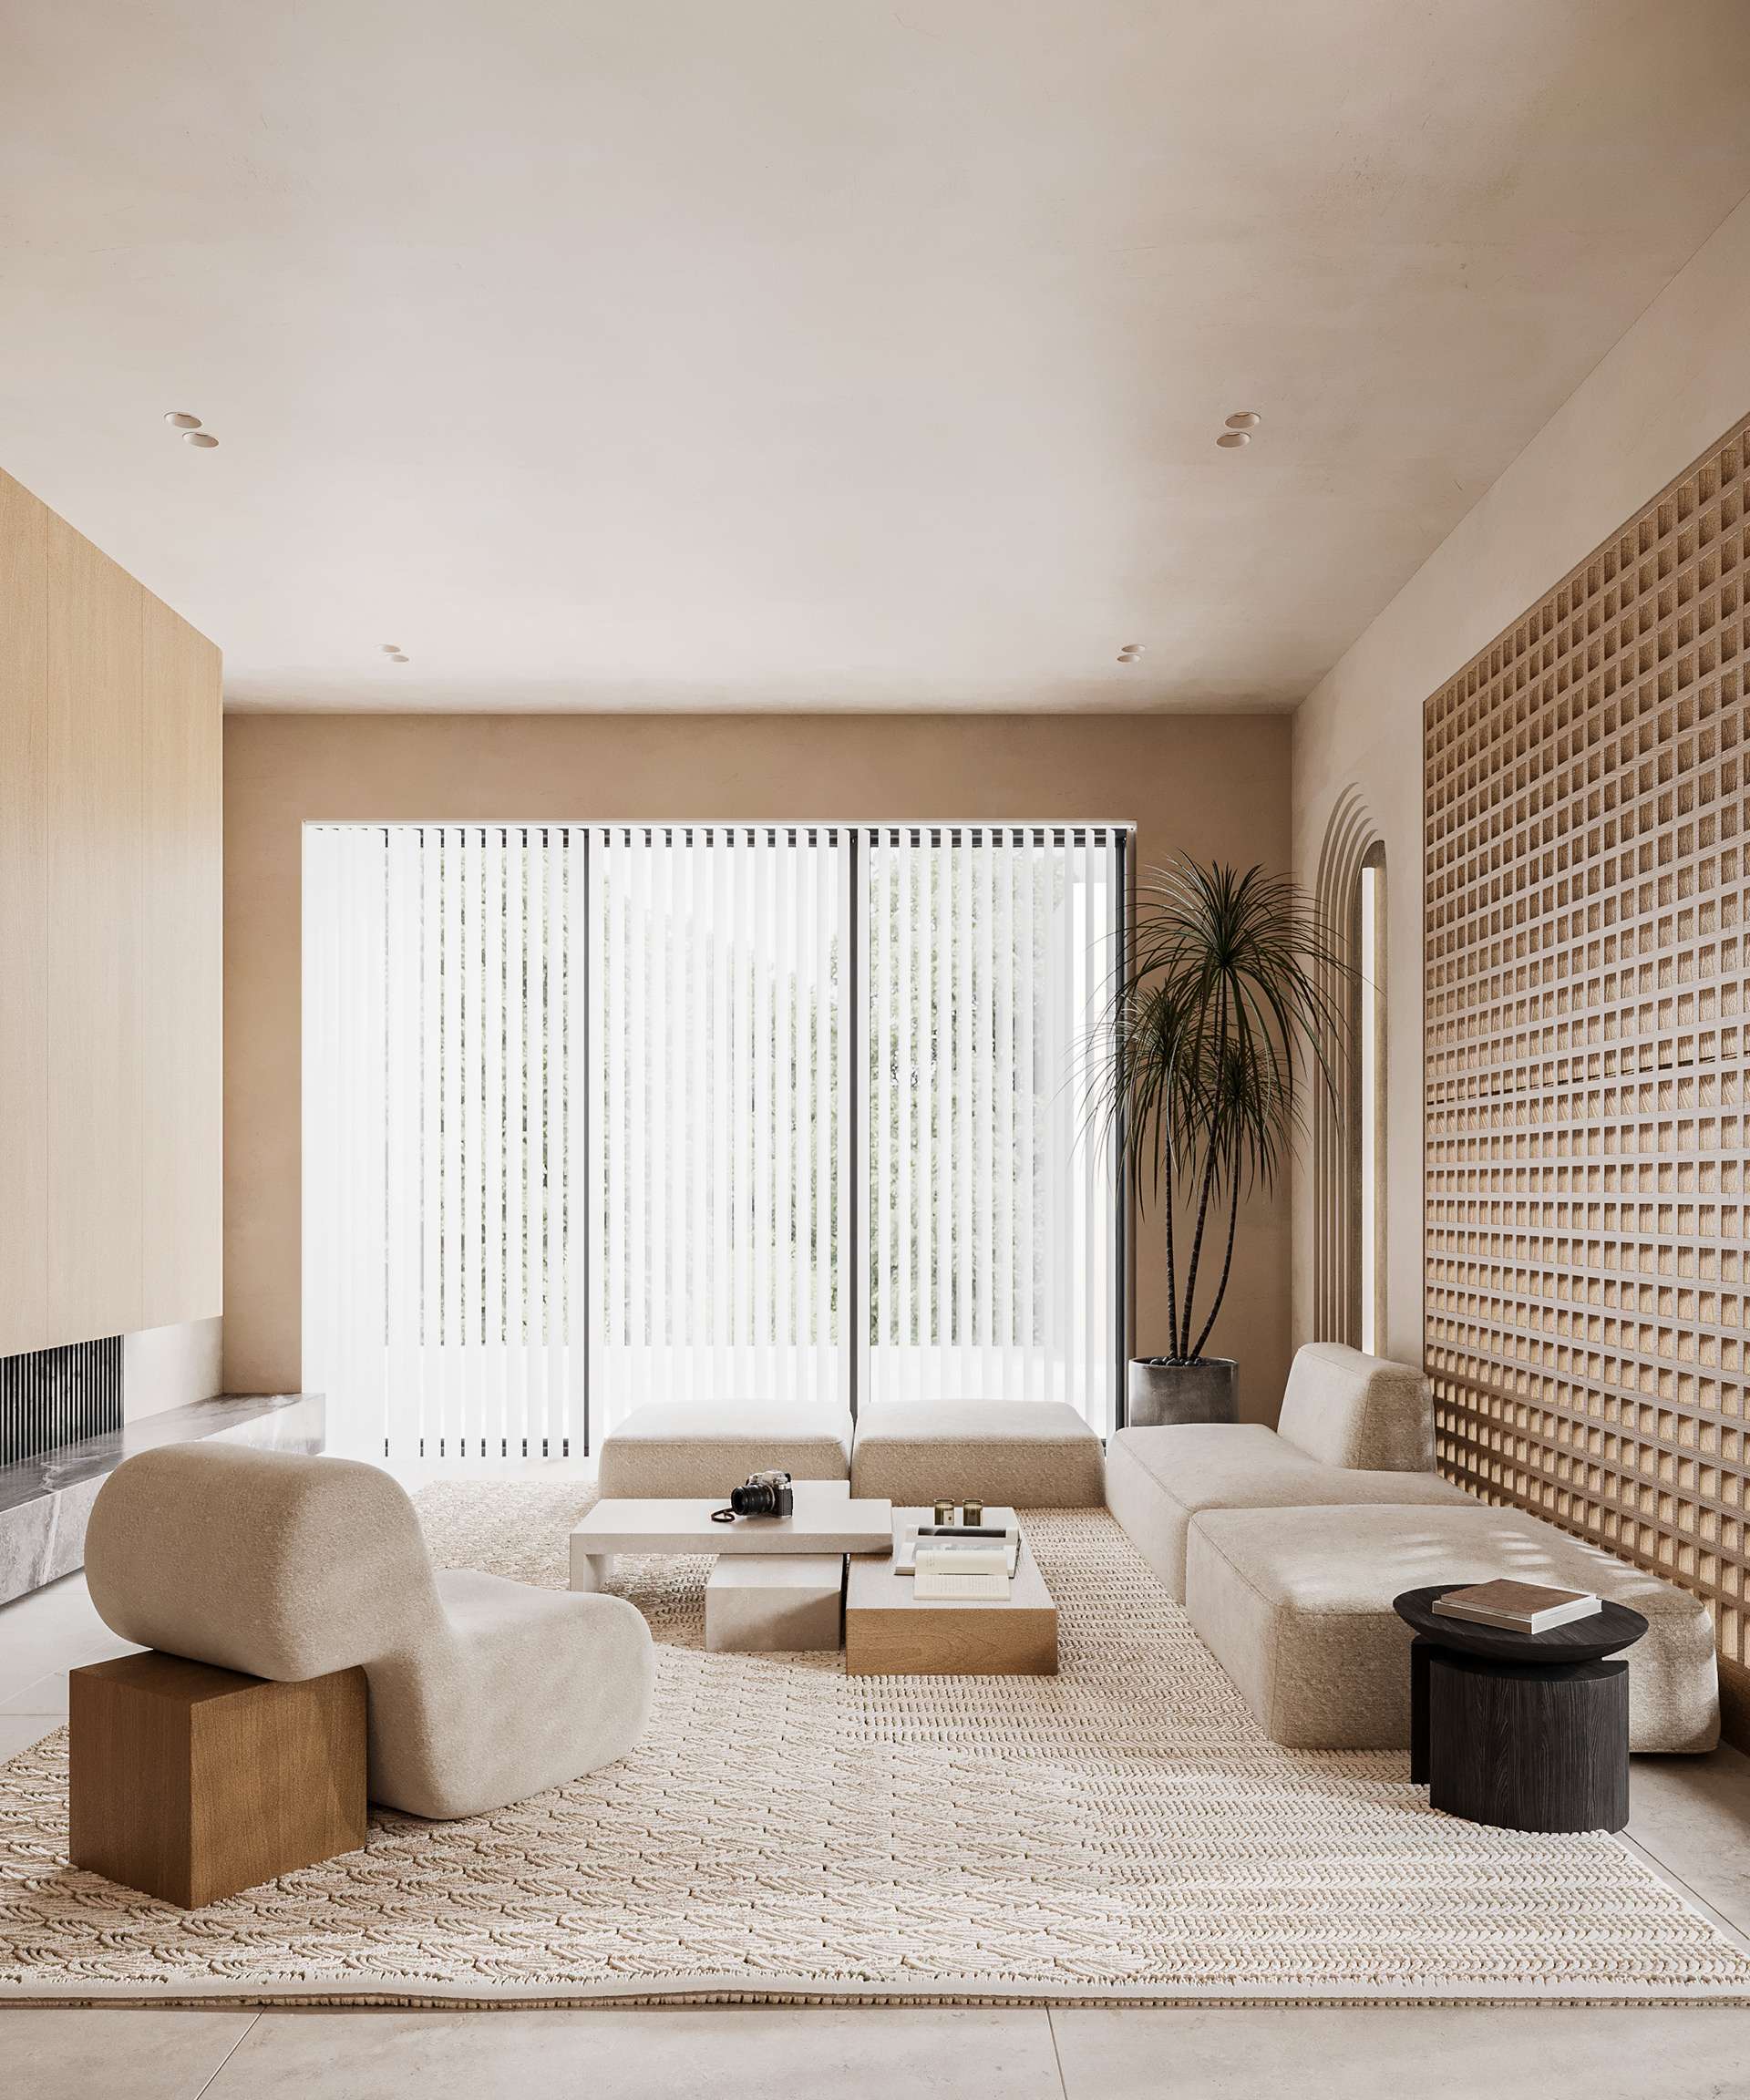 Phòng khách được thiết kế theo phong cách Zen, với bàn thấp và cây xanh tạo nên không gian thư giãn và tĩnh lặng